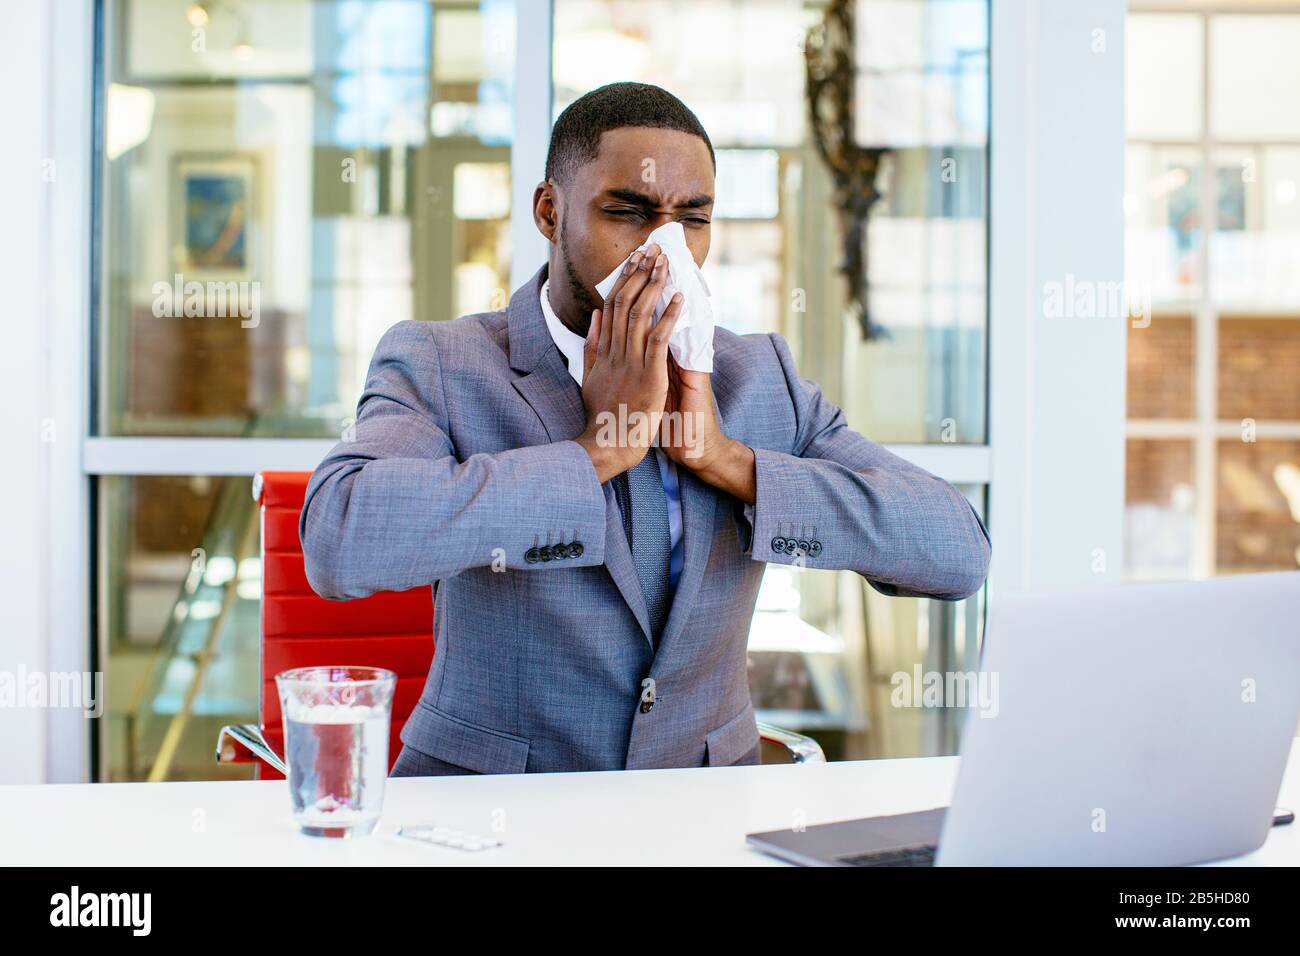 Porträt eines kranken jungen Mannes im Business-Anzug, der seine Nase weht, während er hinter dem Schreibtisch bei der Arbeit mit dem Computer sitzt Stockfoto